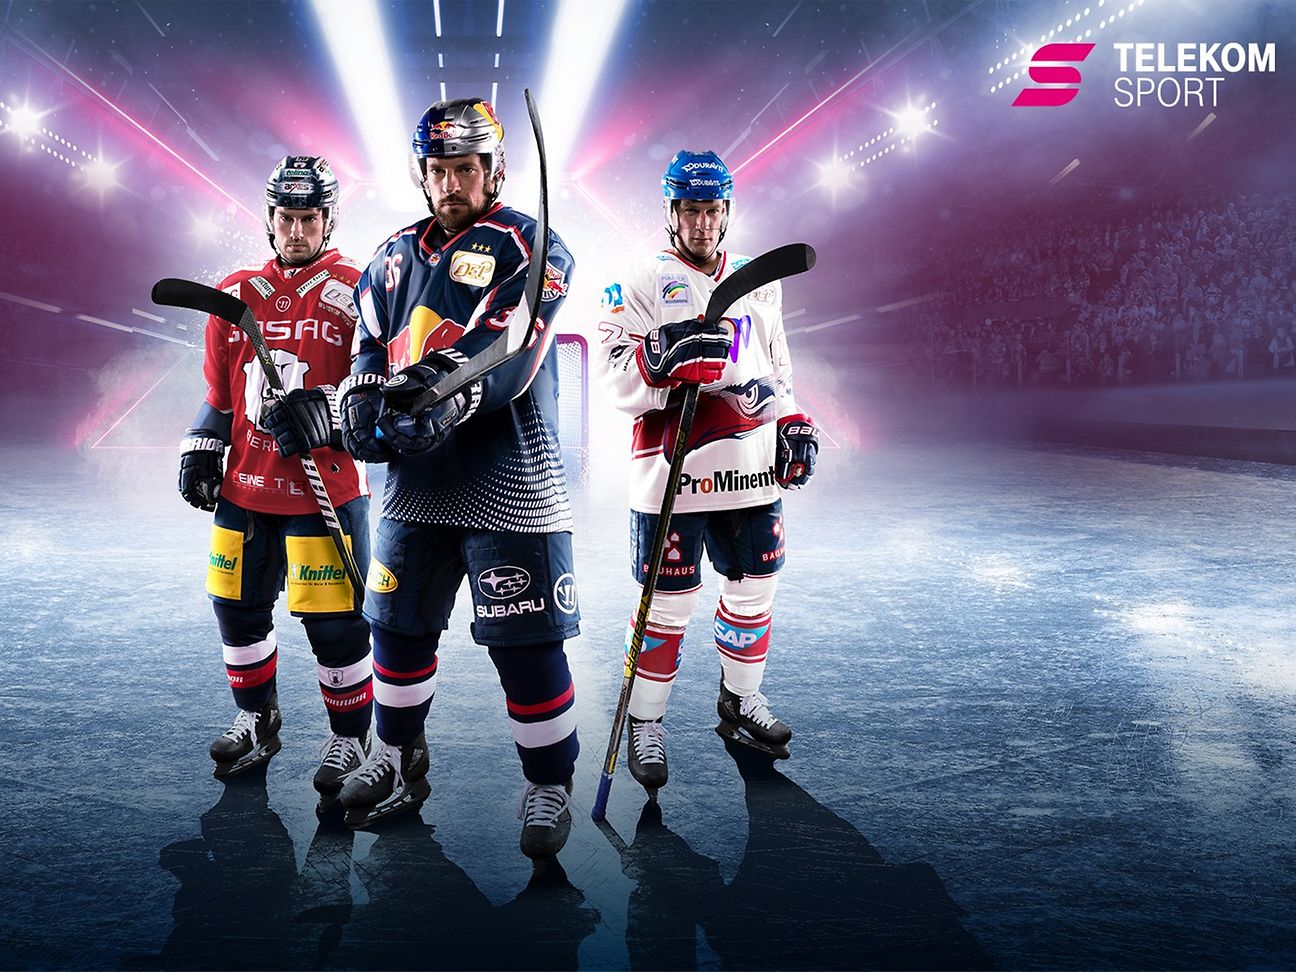 Eishockey Telekom verlängert Partnerschaft mit DEL Deutsche Telekom